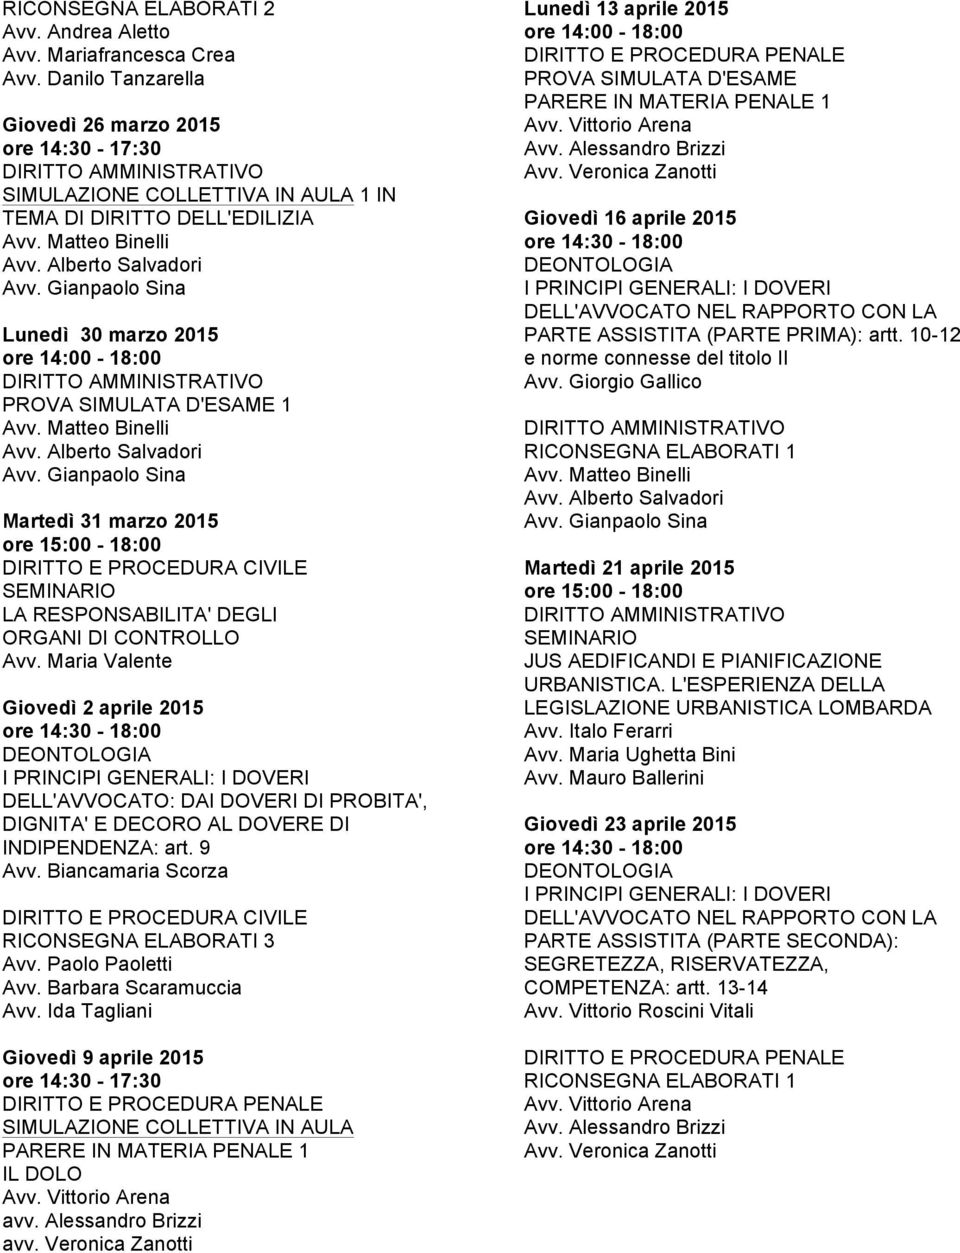 Biancamaria Scorza RICONSEGNA ELABORATI 3 Giovedì 9 aprile 2015 PARERE IN MATERIA PENALE 1 IL DOLO Avv. Vittorio Arena avv. Alessandro Brizzi avv.